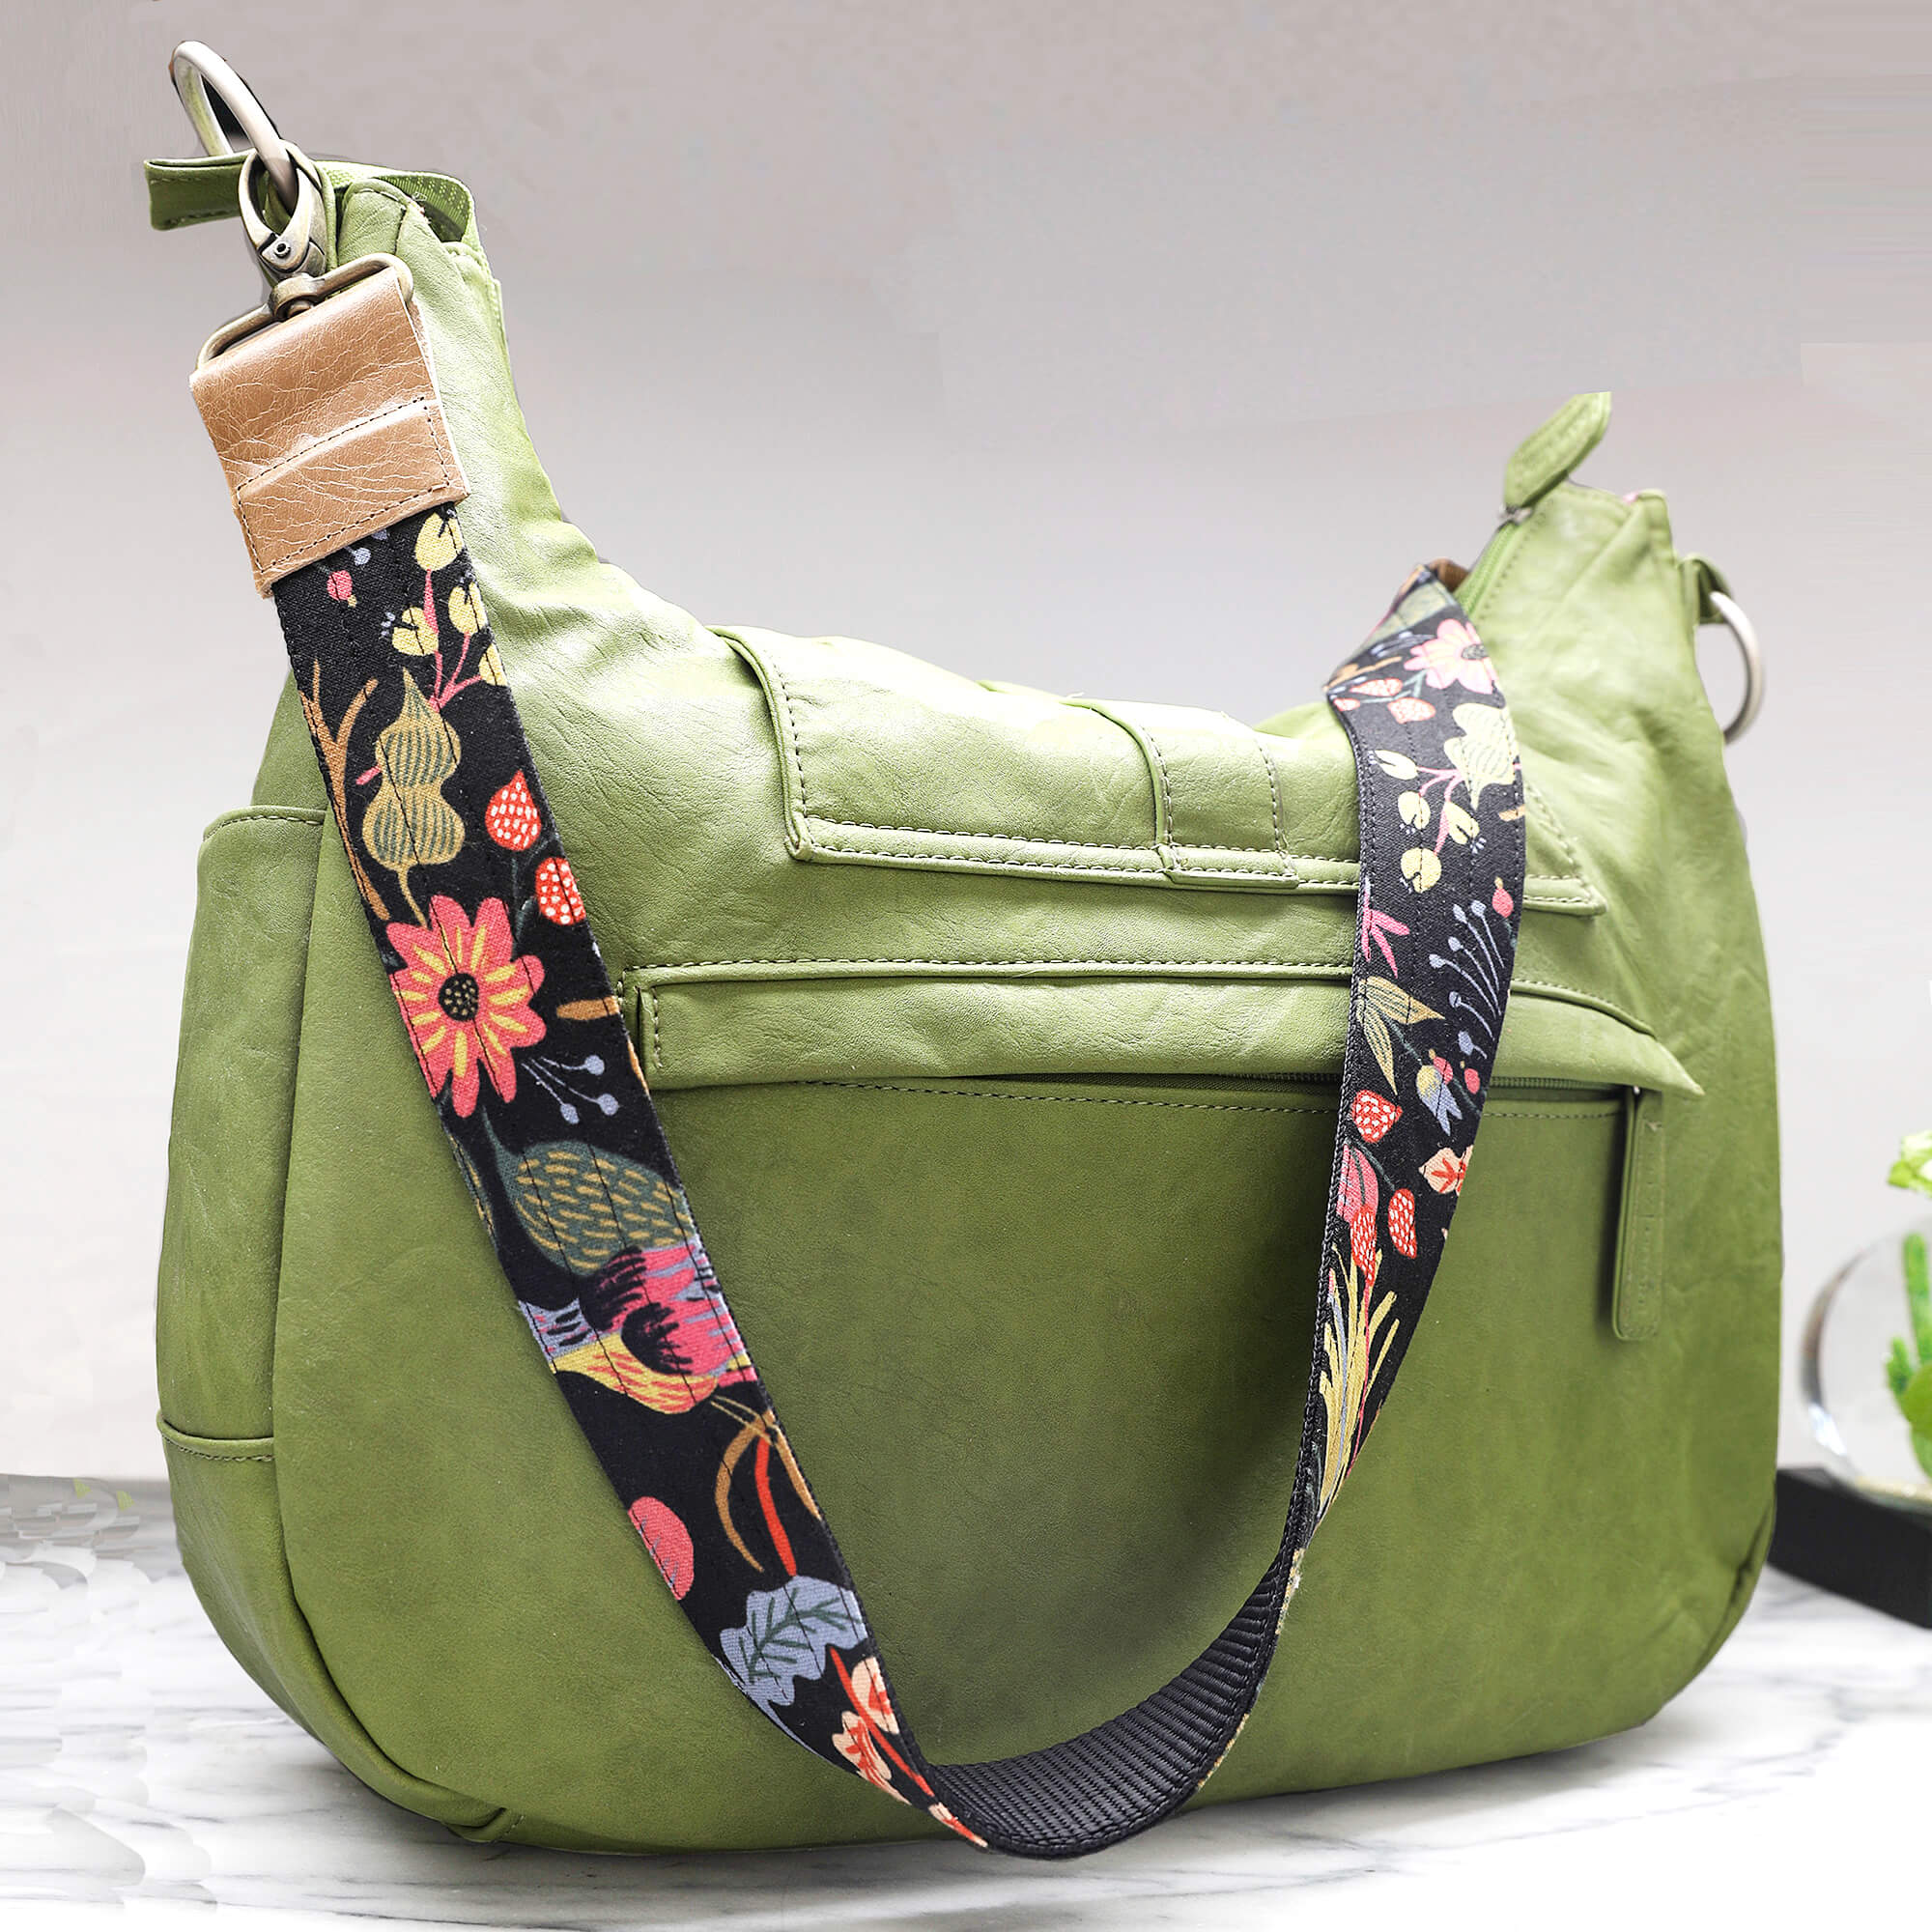  GRFIT Bags Straps Solid Color Bag Strap for Bag